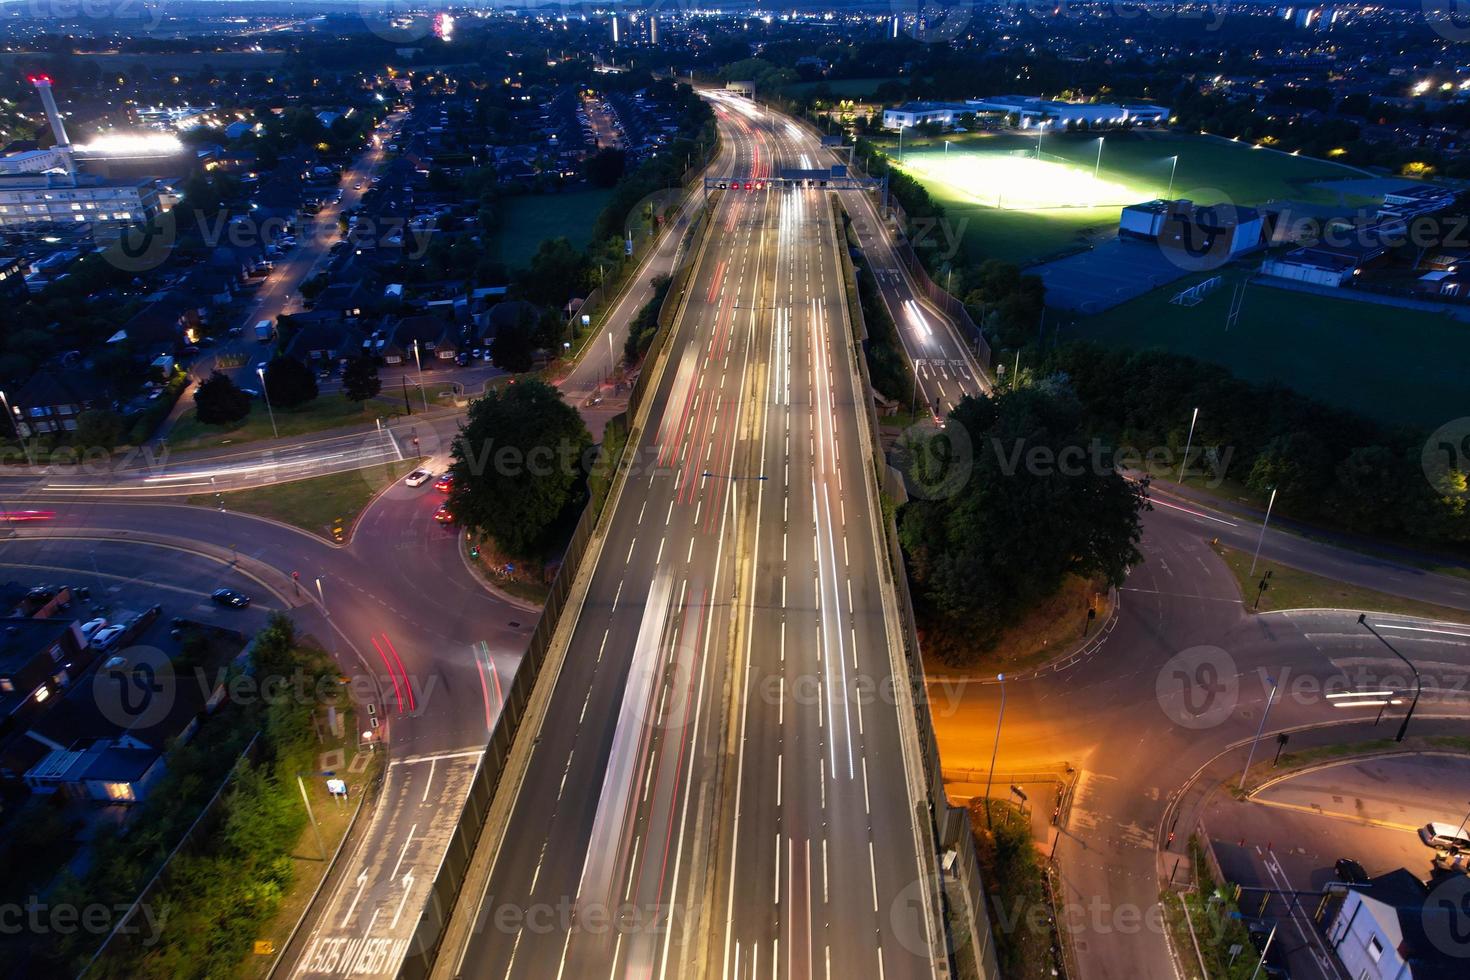 vue en grand angle des autoroutes britanniques avec circulation. les images aériennes des routes et autoroutes britanniques entre les jonctions 7 et 9 de la m1 au coucher du soleil. les images capturées le 09-07-2022 avec la caméra du drone photo